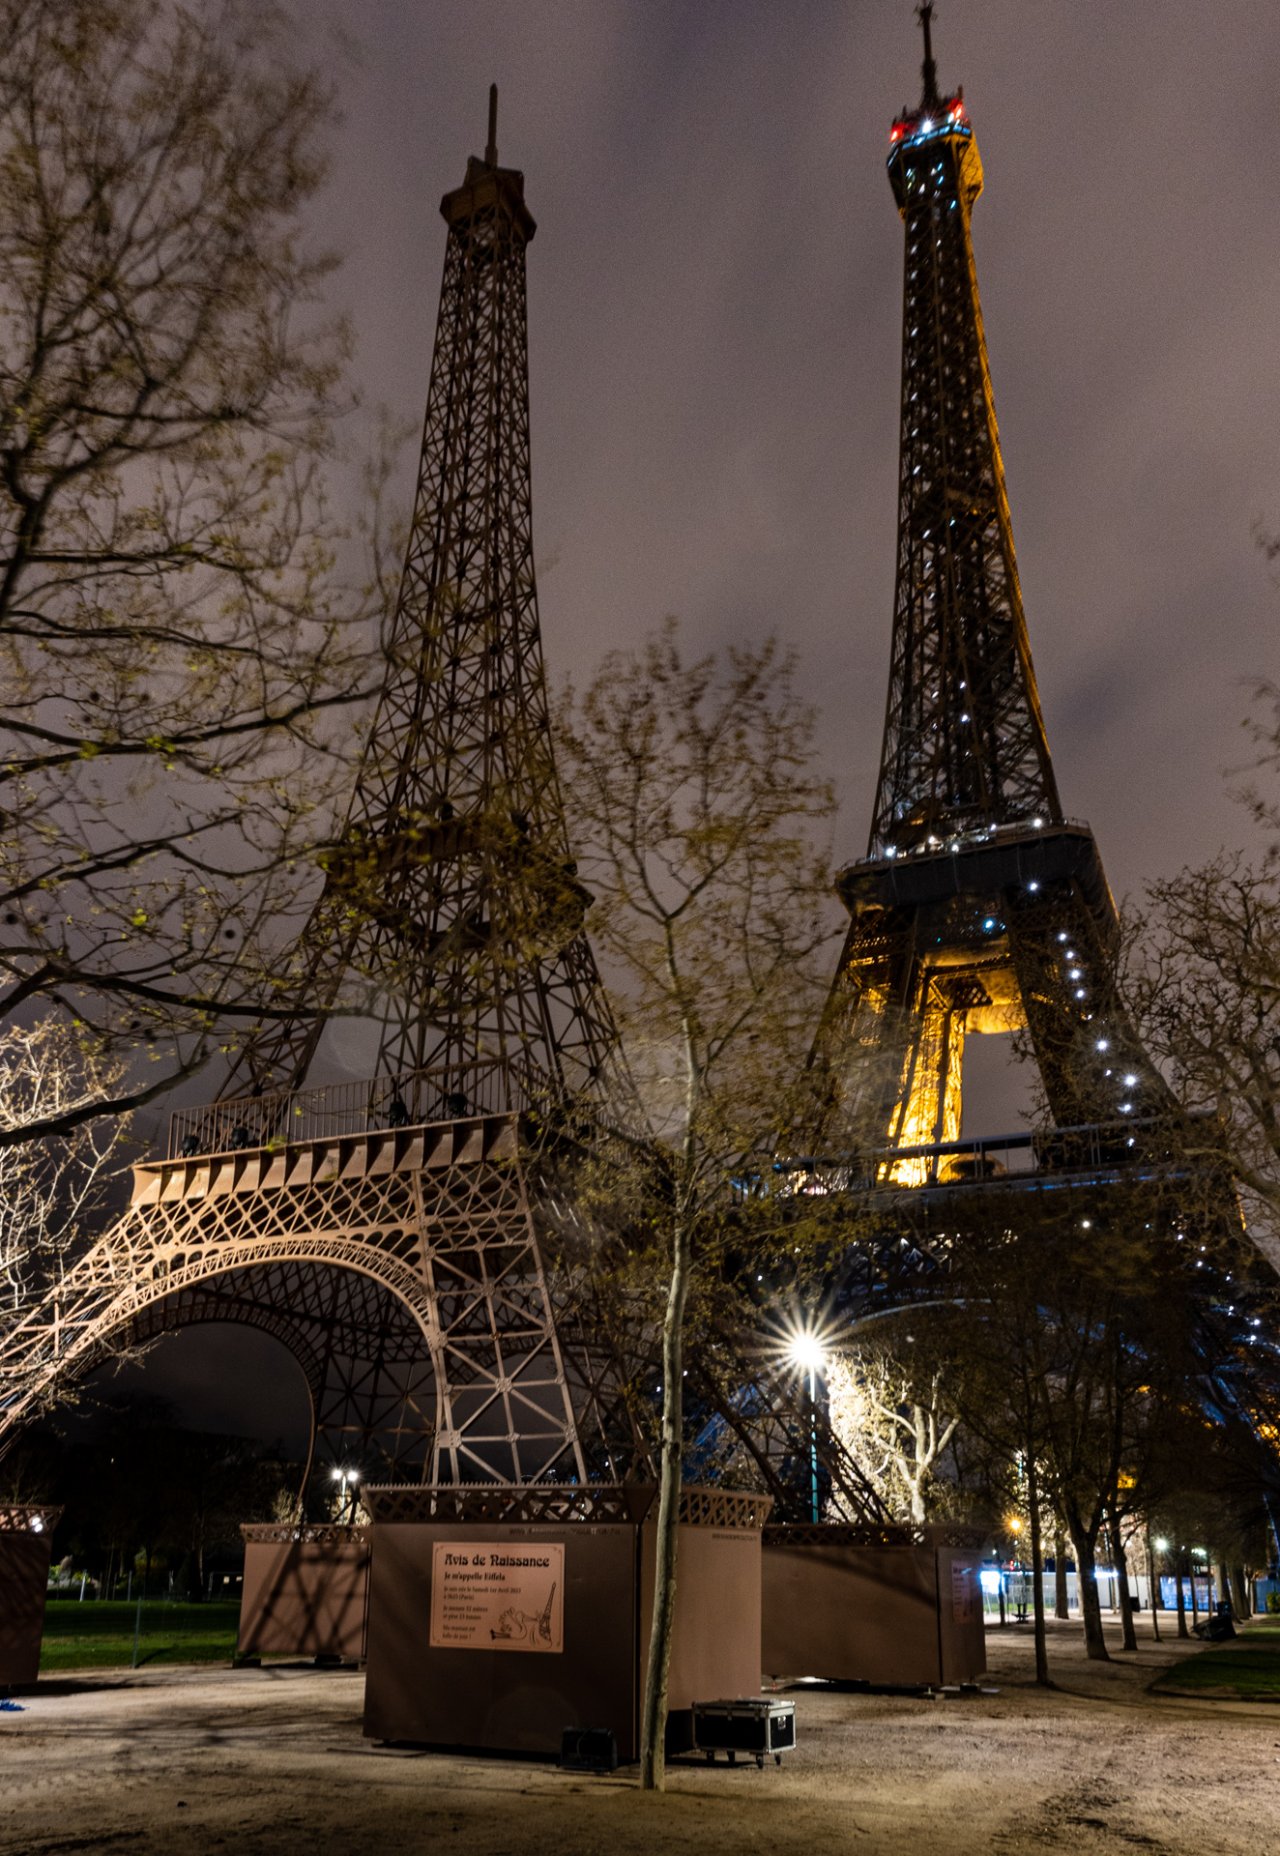 Il y a désormais 2 Tours Eiffel à Paris #2